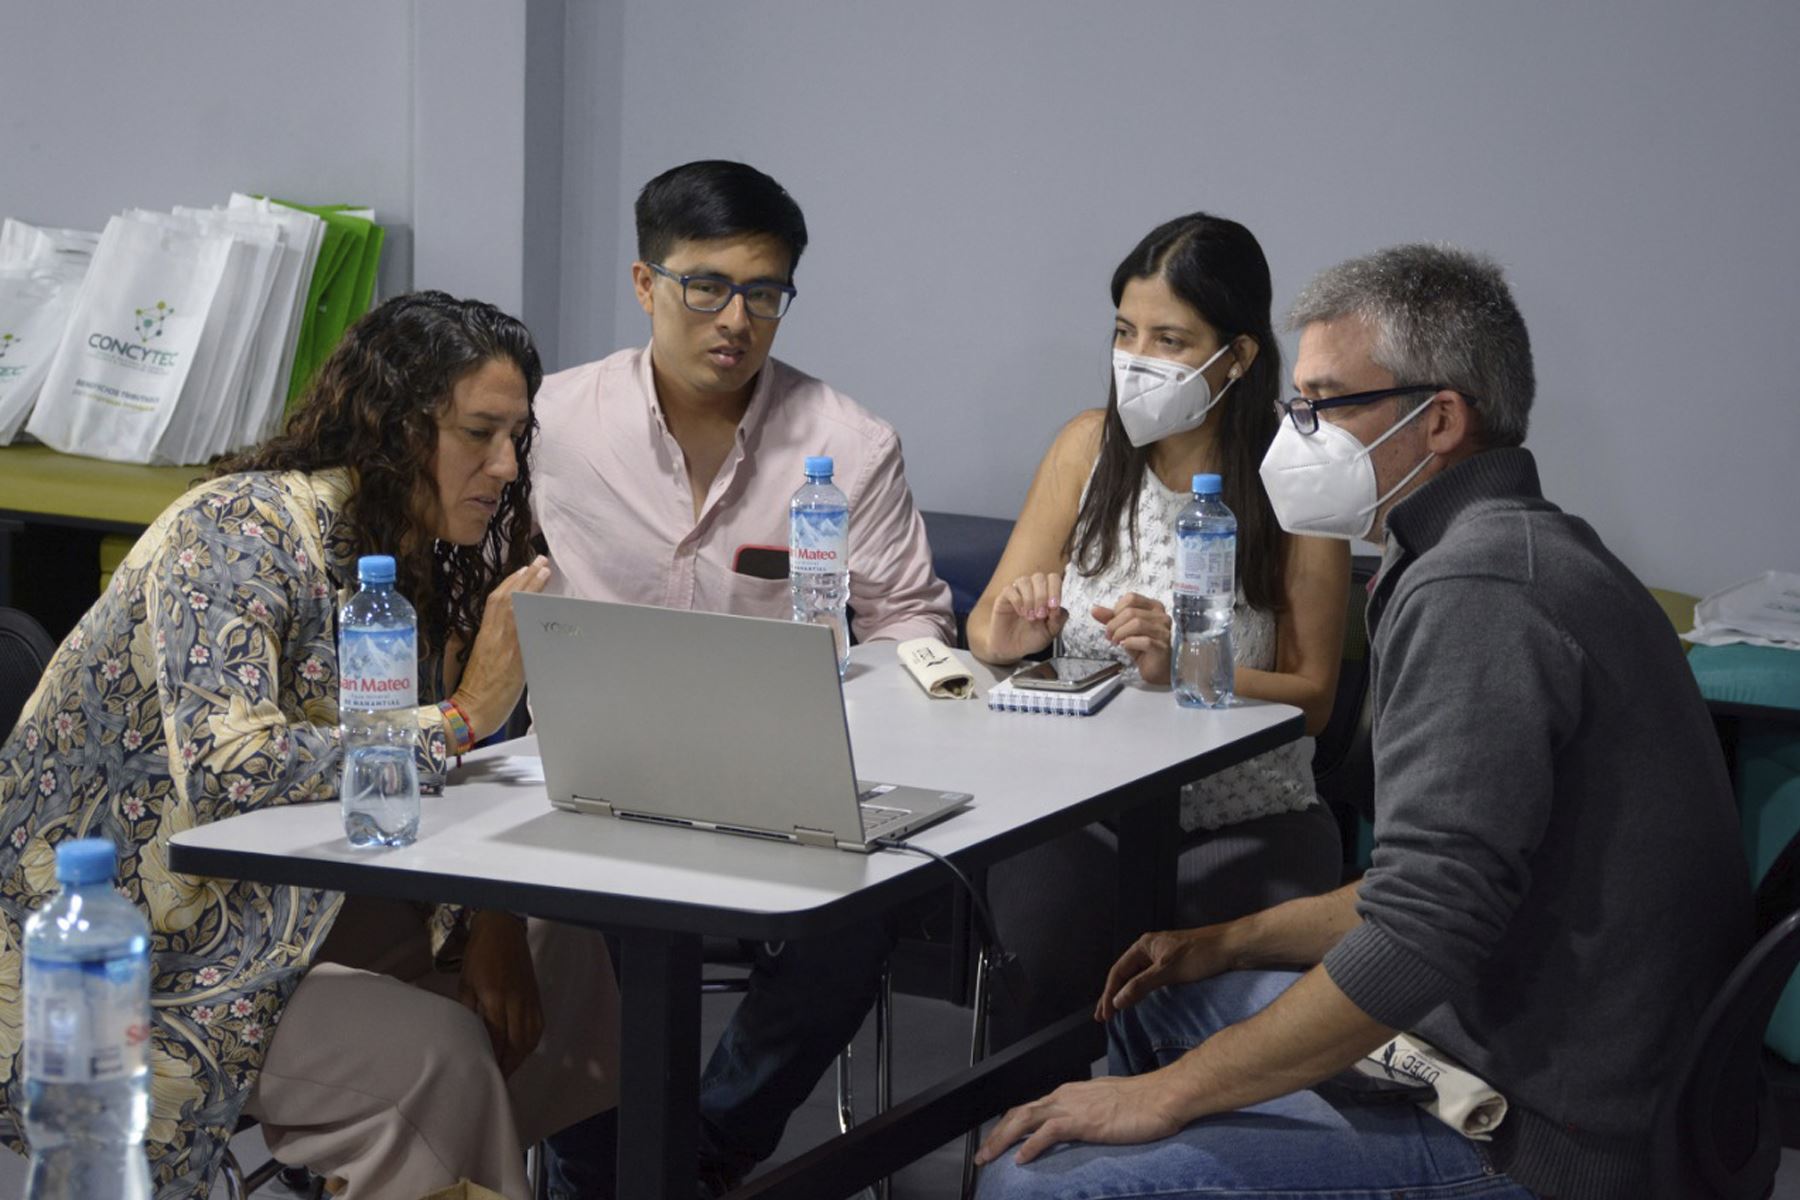 Peruanos con innovadoras startups fueron capacitados en emprendimiento tecnológico